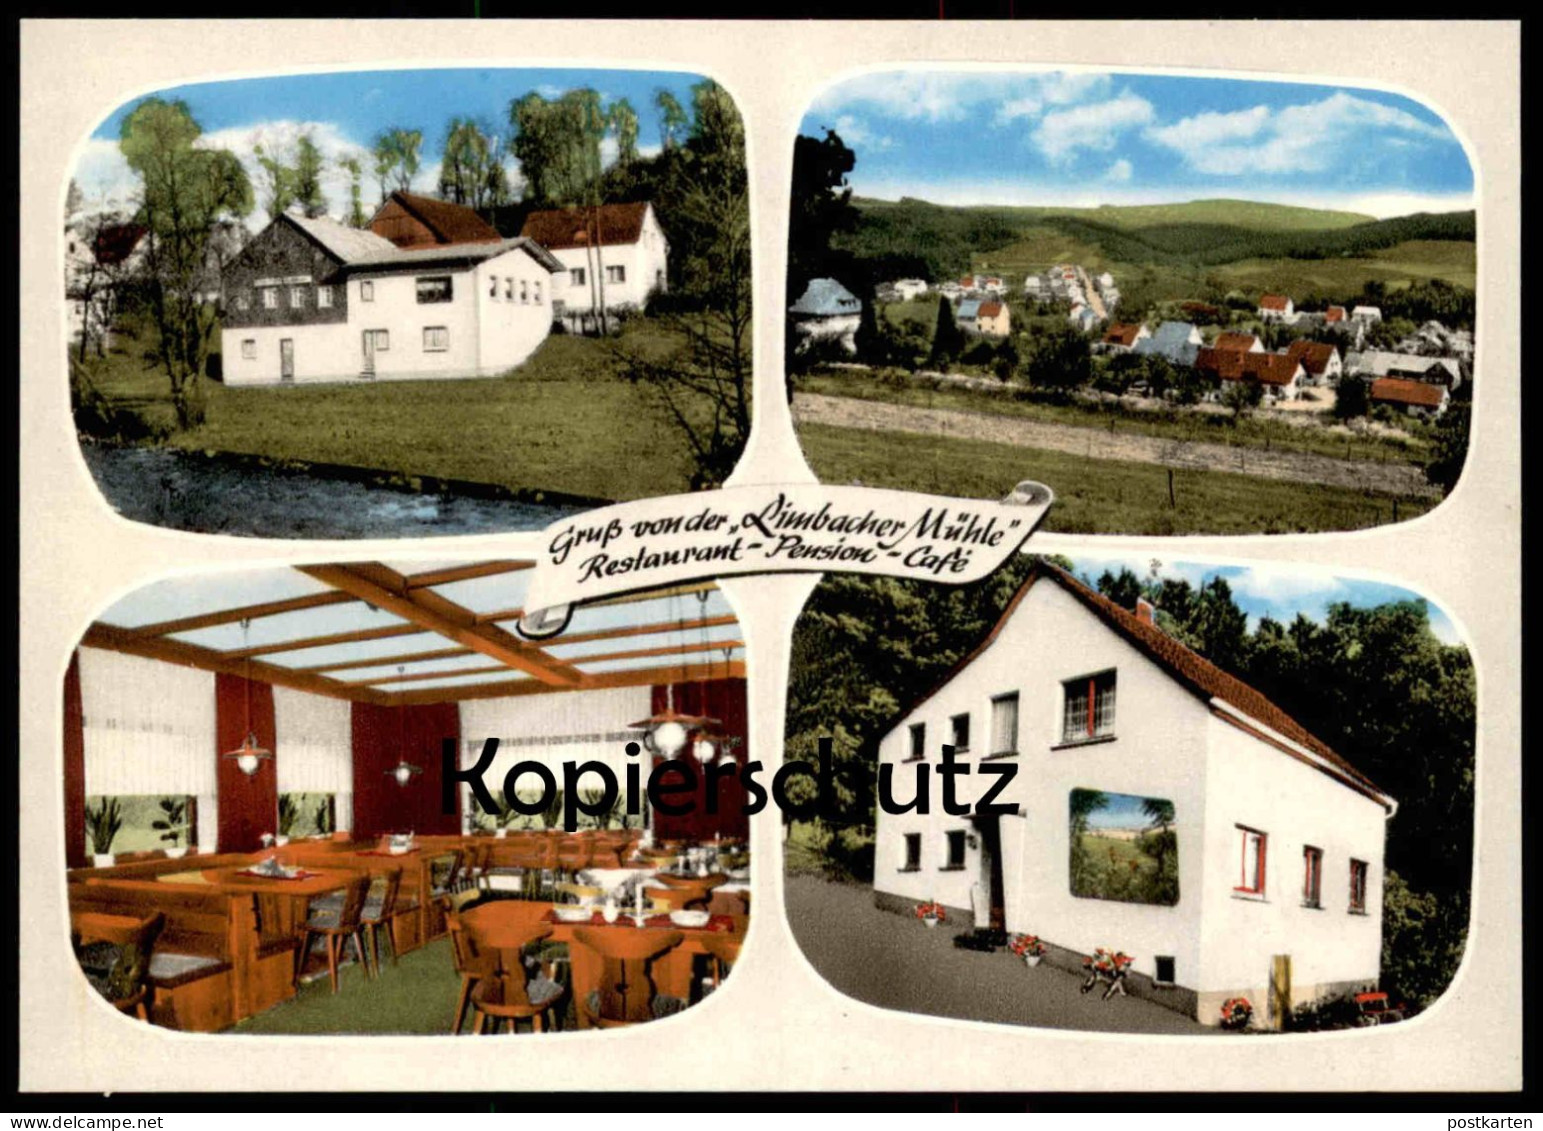 ÄLTERE POSTKARTE GRUSS VON DER LIMBACHER MÜHLE RESTAURANT PENSION CAFÉ LIMBACH HACHENBURG Rheinland-Pfalz AK Postcard - Hachenburg